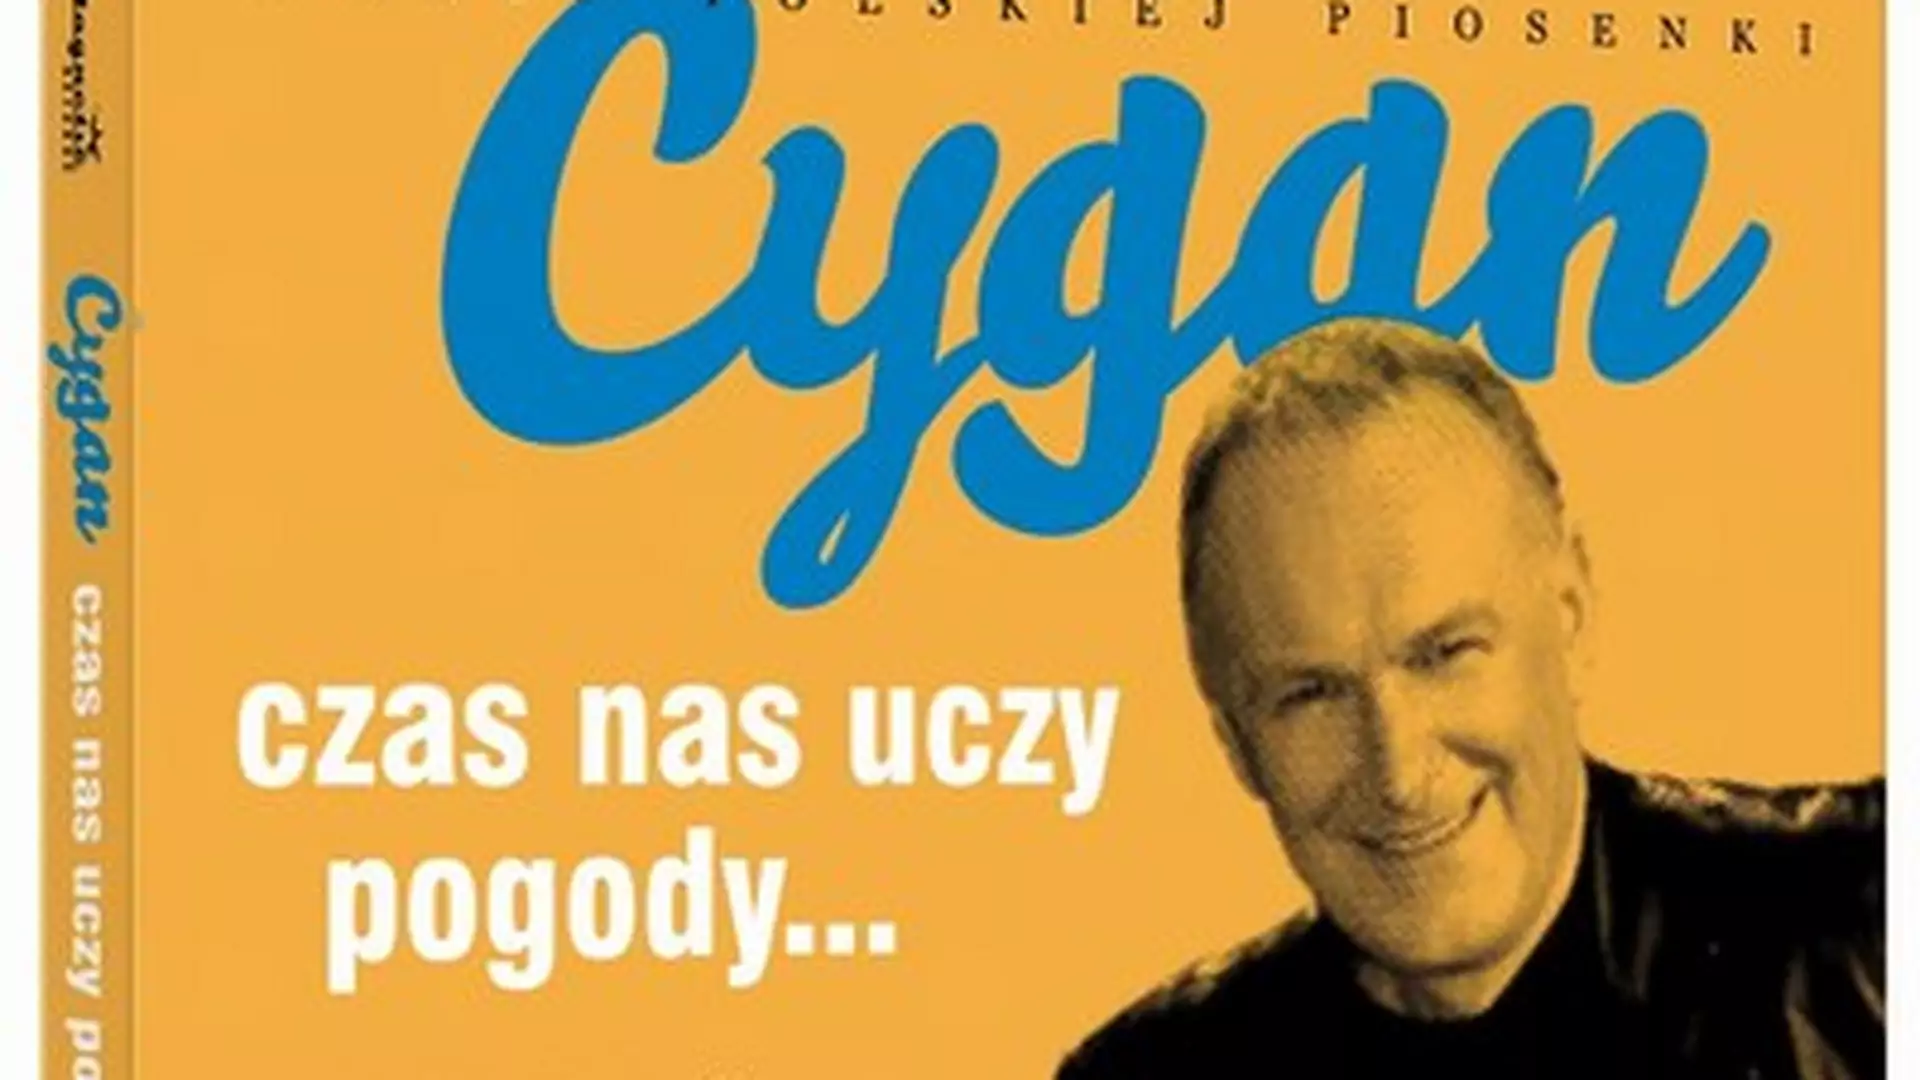 Jacek Cygan -  poeta polskiej piosenki